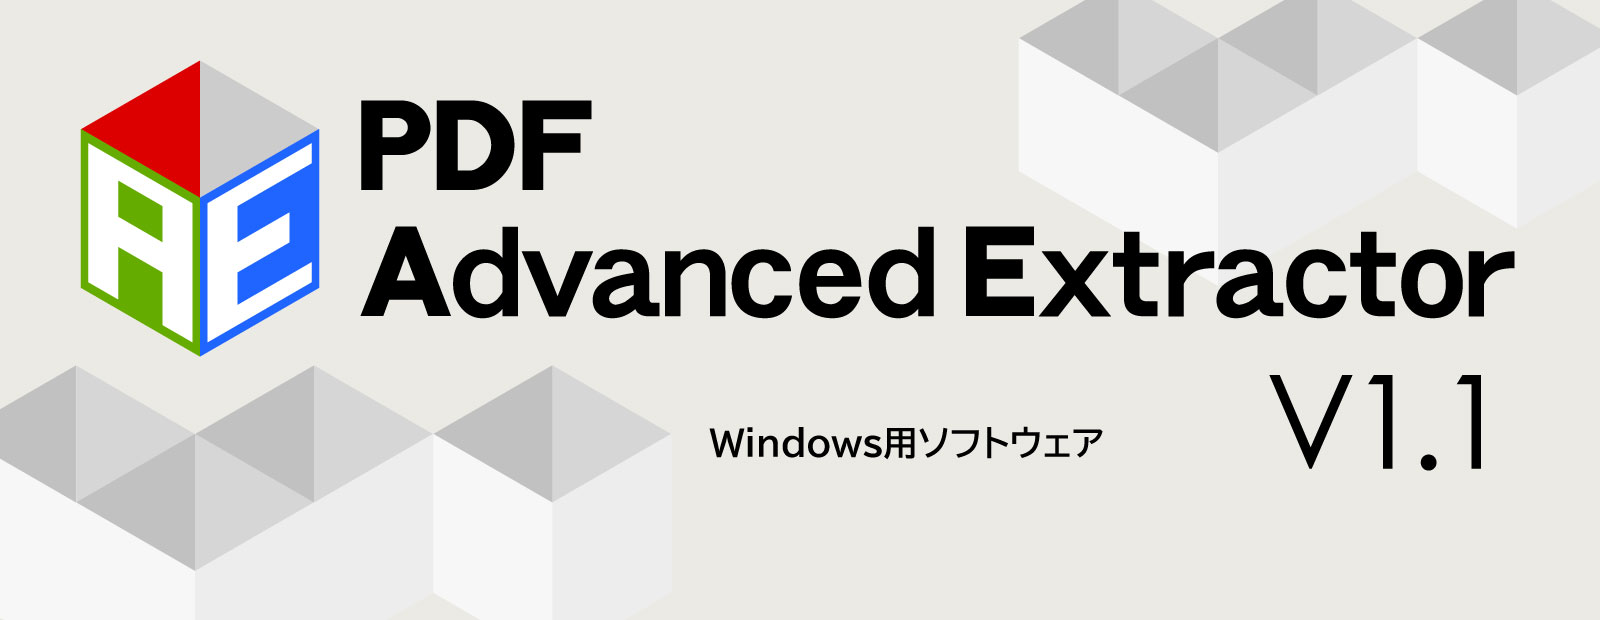 PDFのテキストを正しい順序で抽出できる！！『PDF Advanced Extractor V1.1』新発売